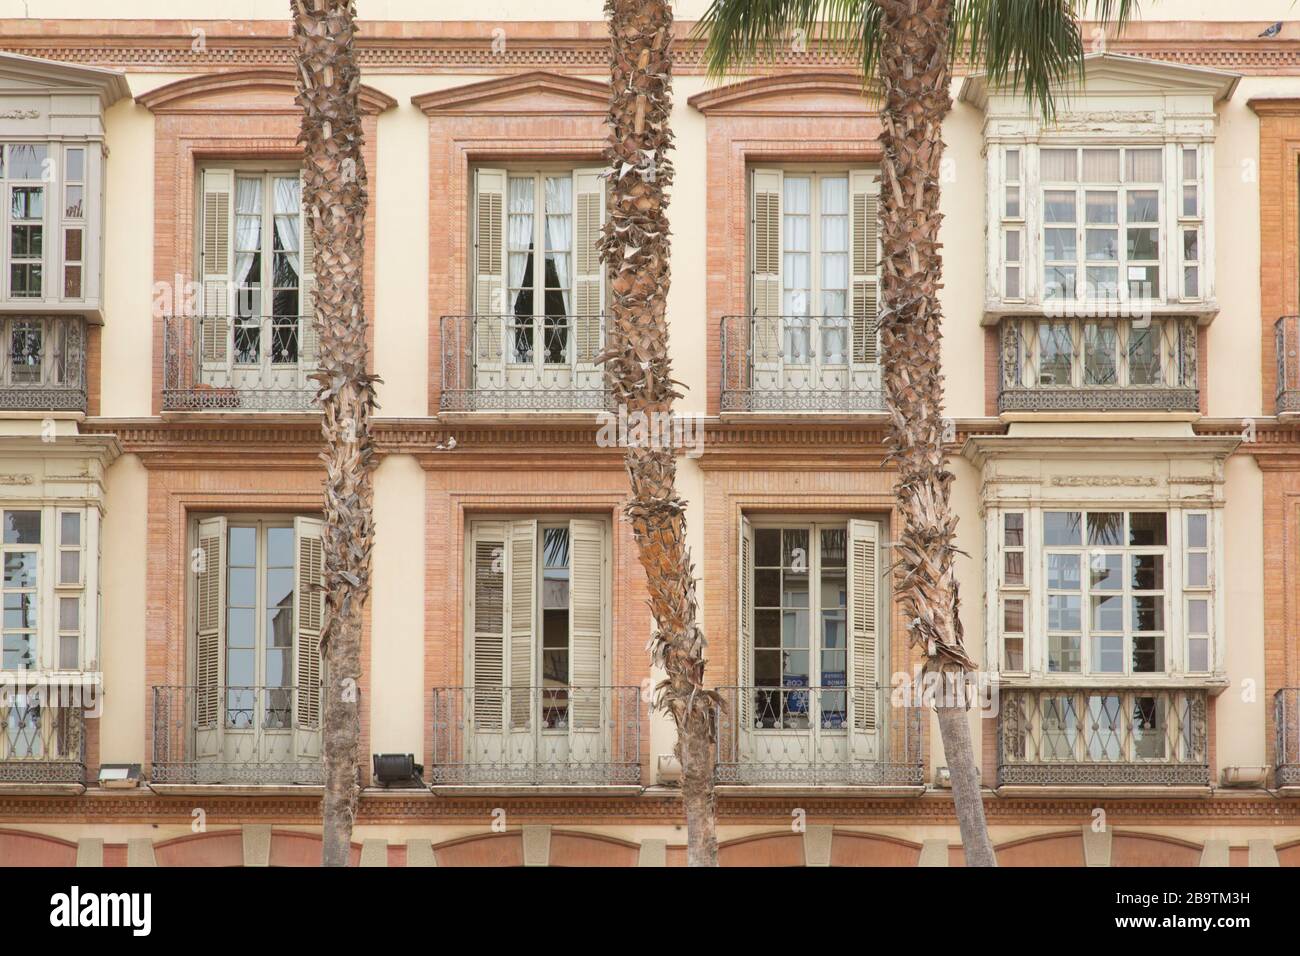 Second and third floors facade of a grand building in Plaza de la Constitución, Malaga, Andalusia, Spain Stock Photo